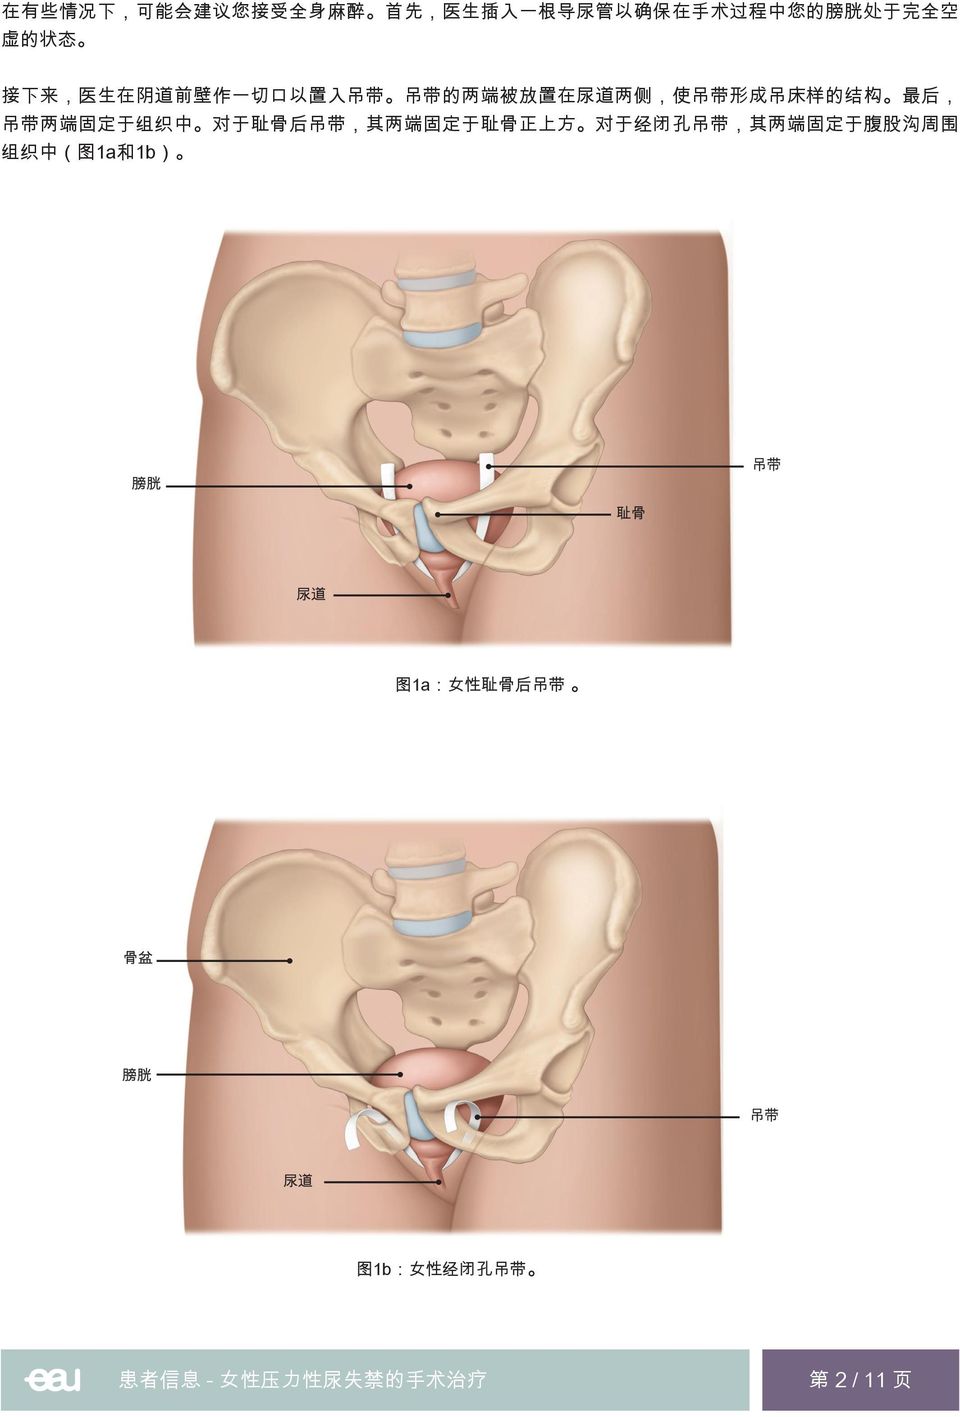 后, 吊 带 两 端 固 定 于 组 织 中 对 于 耻 骨 后 吊 带, 其 两 端 固 定 于 耻 骨 正 上 方 对 于 经 闭 孔 吊 带, 其 两 端 固 定 于 腹 股 沟 周 围